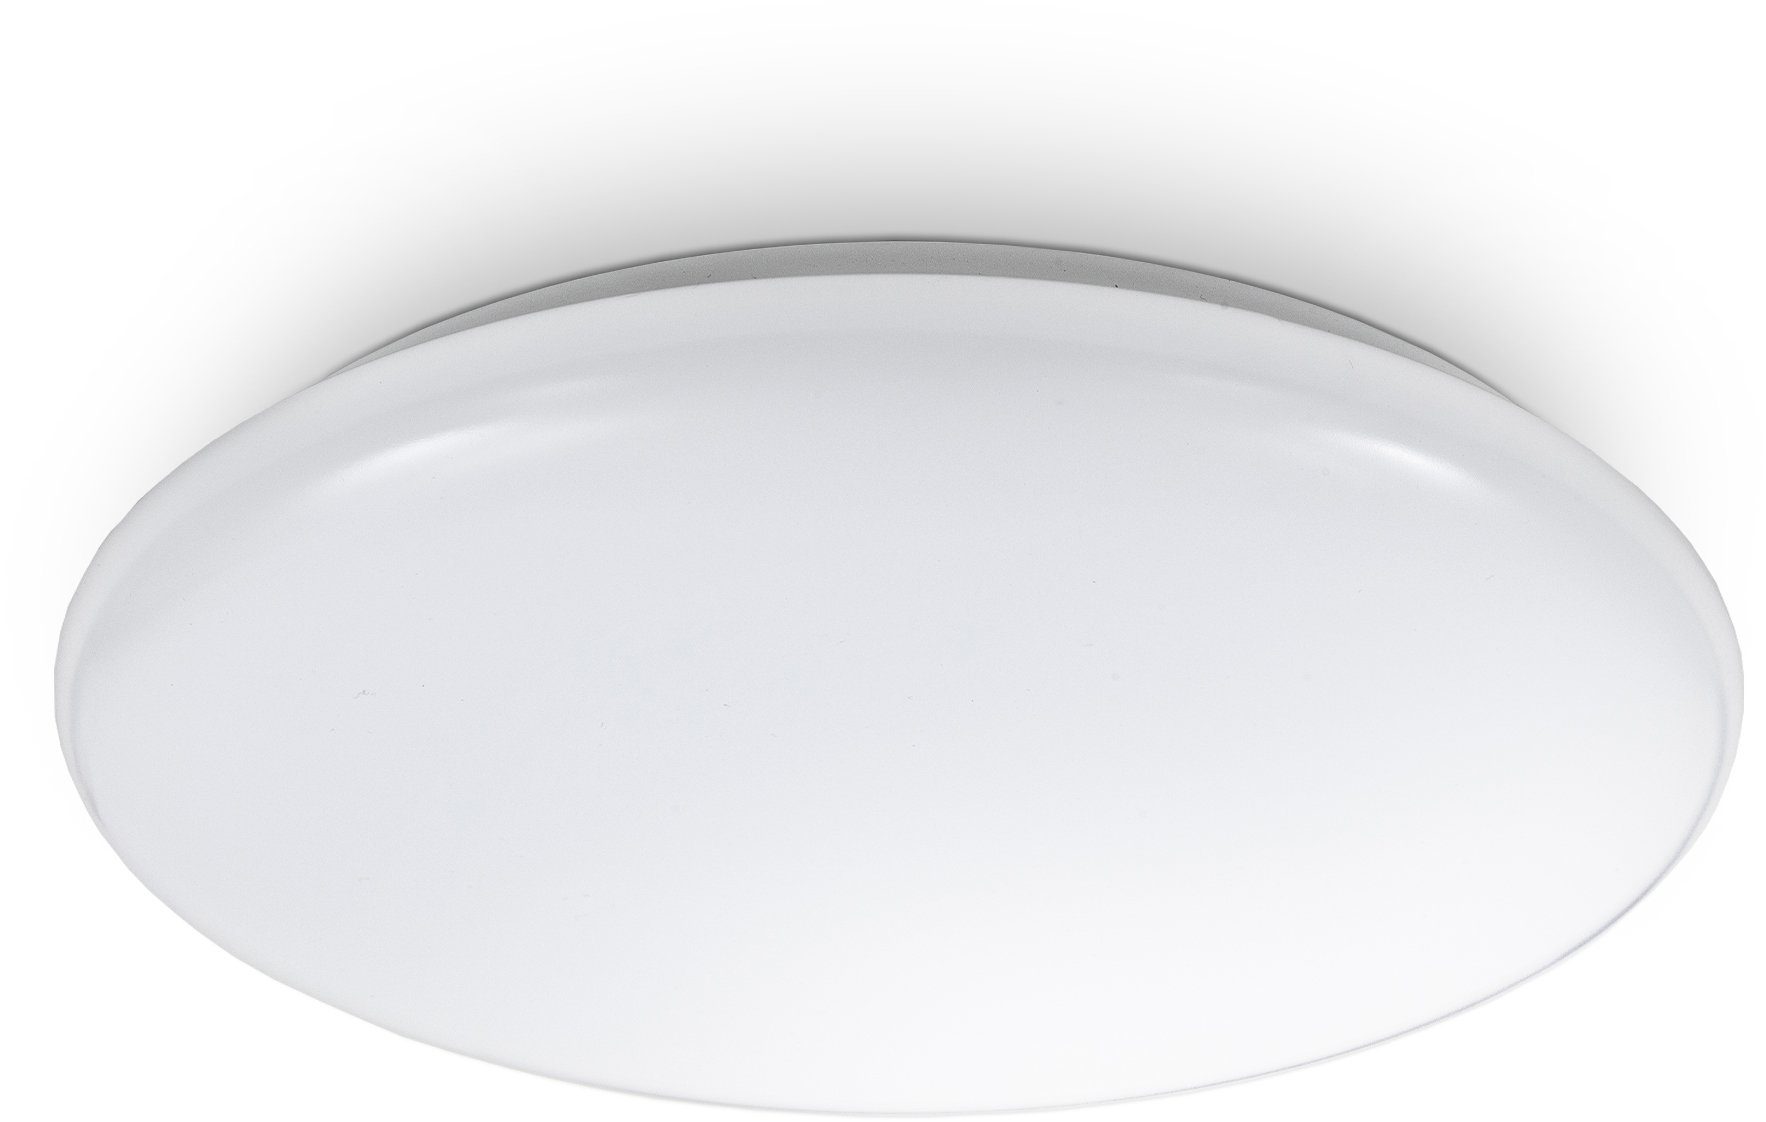 Neutralweiß, Deckenleuchte Design-Lampe LED B.K.Licht LED 28cm Wohnzimmer 12W Weiß integriert, Leonis, Leuchte LED Deckenlampe fest